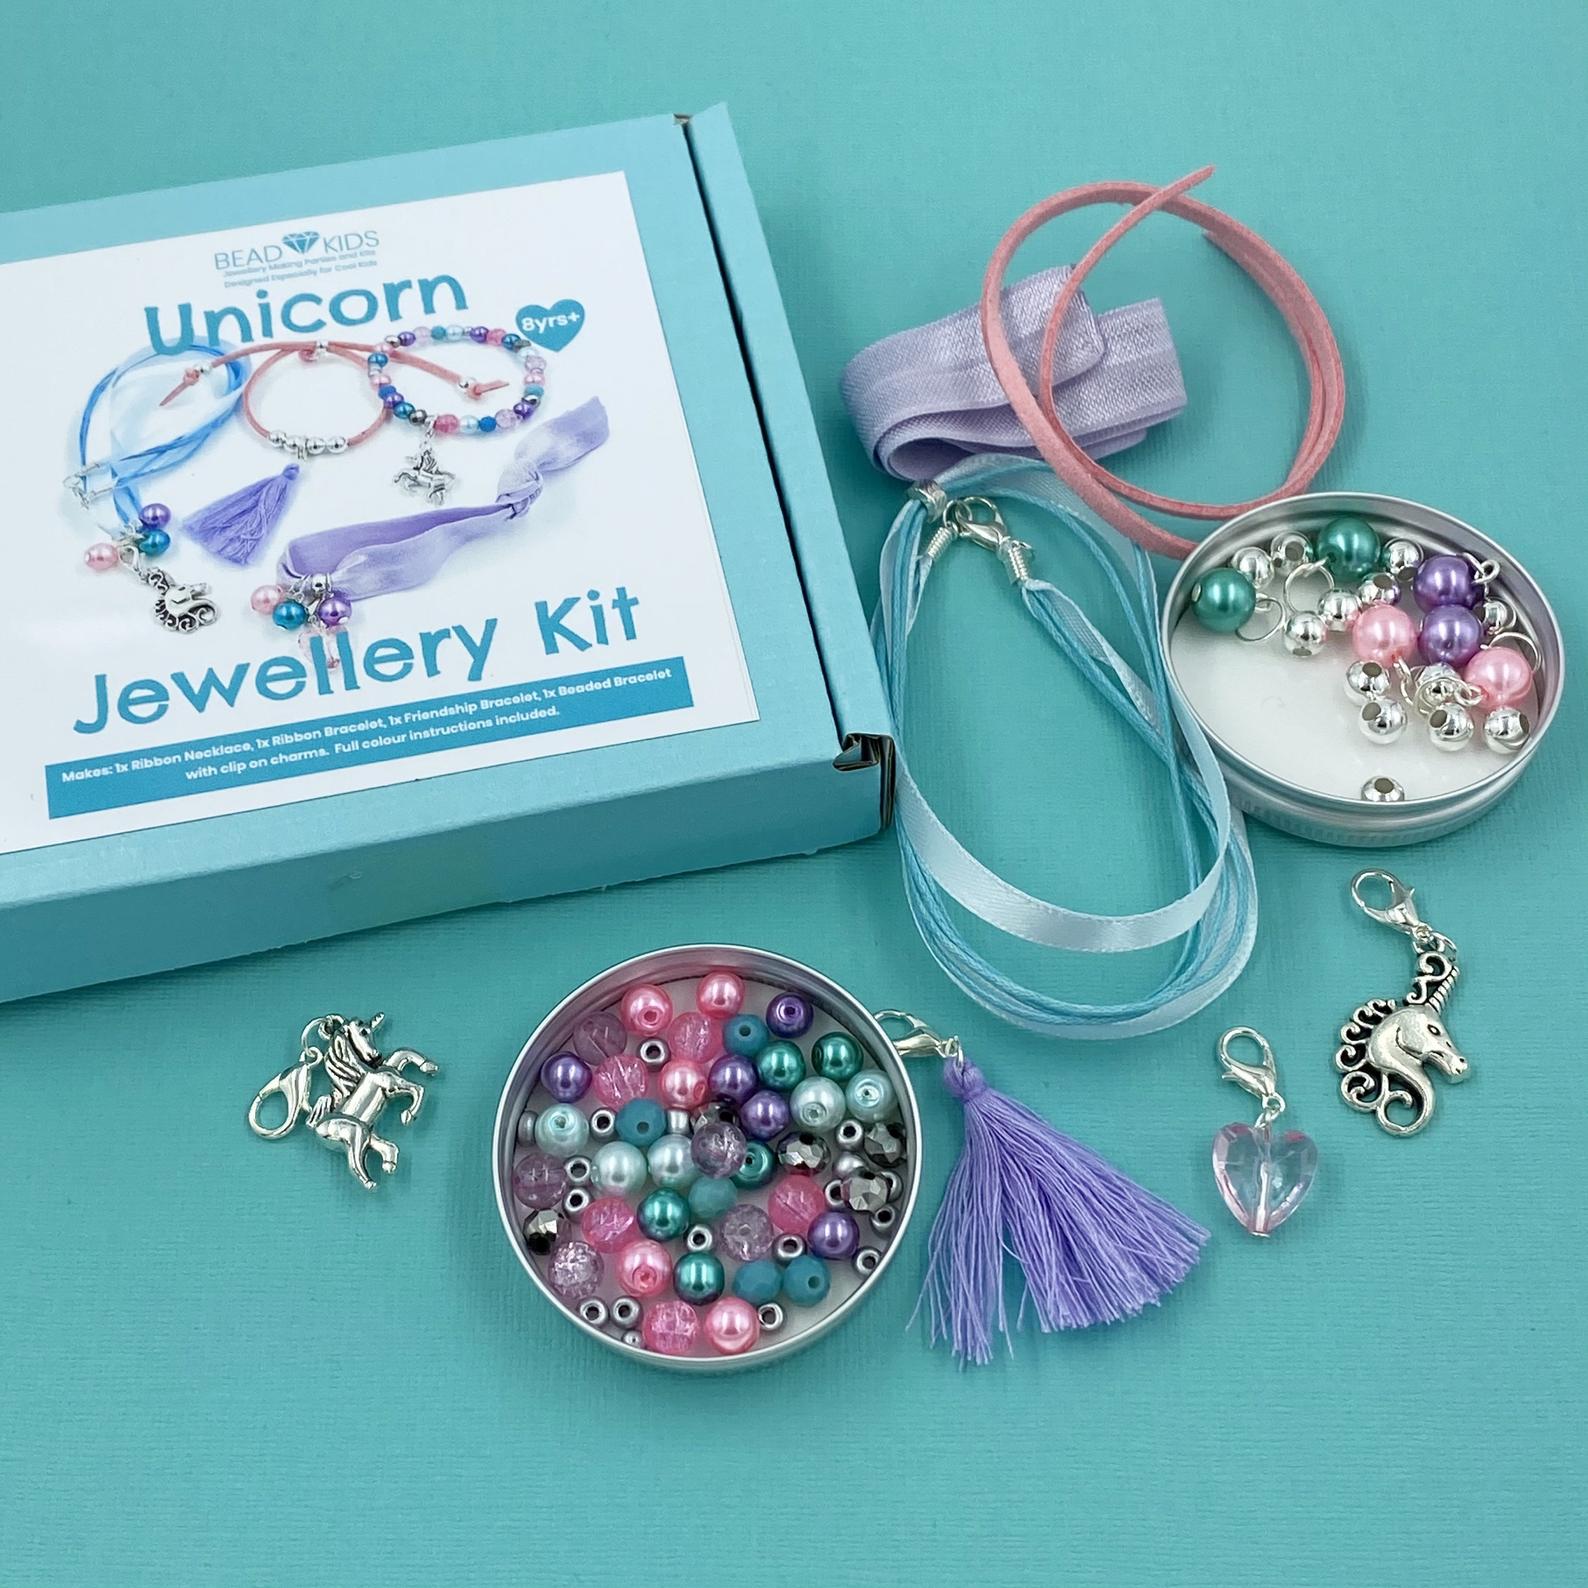 unicorn-bead-kits-kit